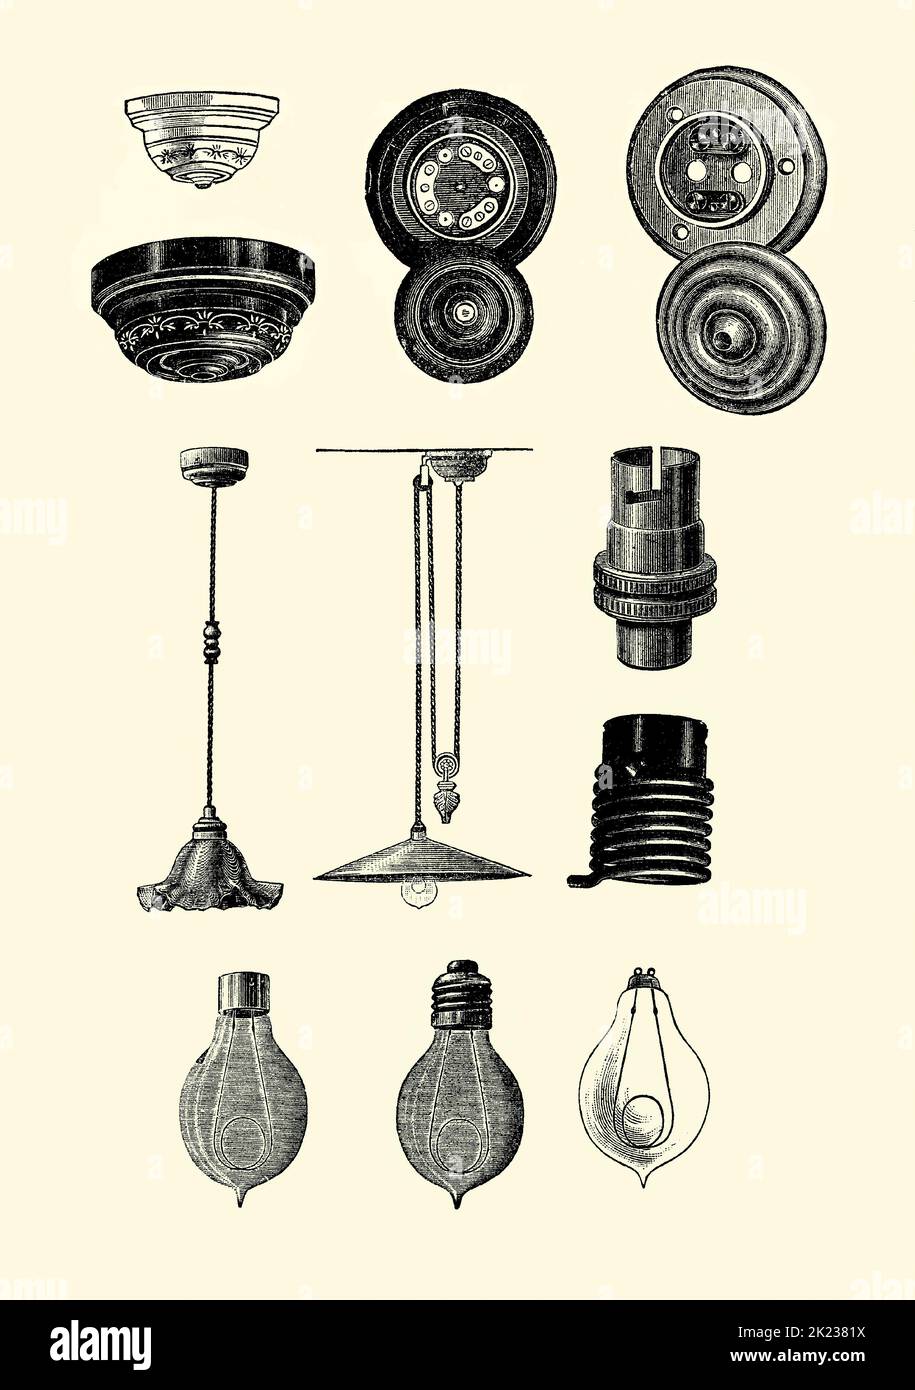 Eine alte viktorianische Gravur von verschiedenen elektrischen Geräten, die in der Beleuchtung während dieser Ära in Großbritannien verwendet wurden. Es ist aus einem Buch von 1890. Die obere Reihe zeigt Deckenrosen und ihre Basiskontakte. In der Mitte befinden sich zwei hängende ‘Aufzug’-Geräte oder ‘Elektrolier’. In der Mitte rechts befinden sich zwei Lampenfassungen (Edison oben und Schlangenmuster unten). In der unteren Reihe befinden sich drei Edison-Swan Glühlampen mit verschiedenen Armaturen (links BC, Mitte es, rechts BL). Stockfoto